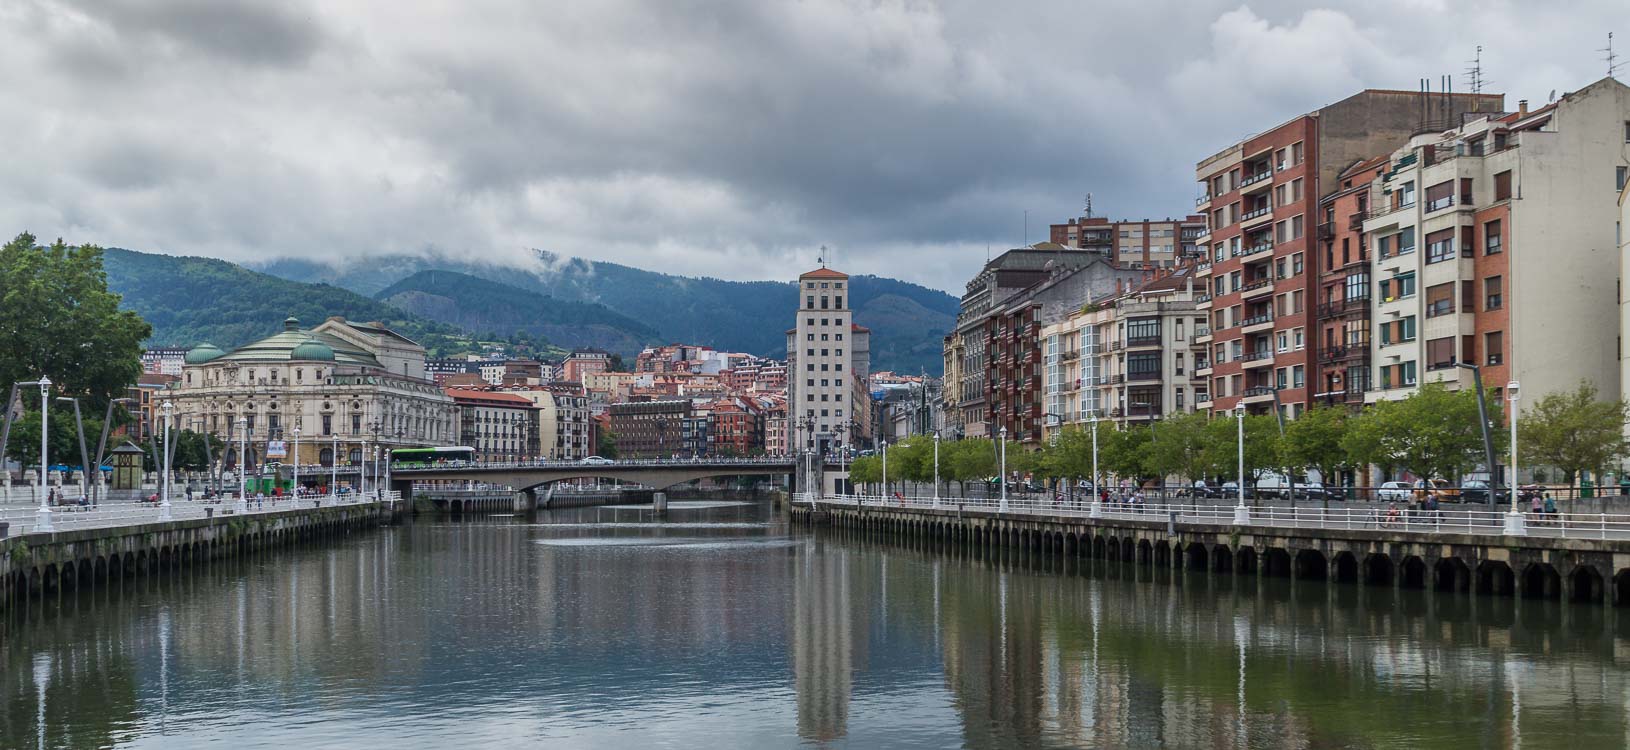 Bilbao - Nervion